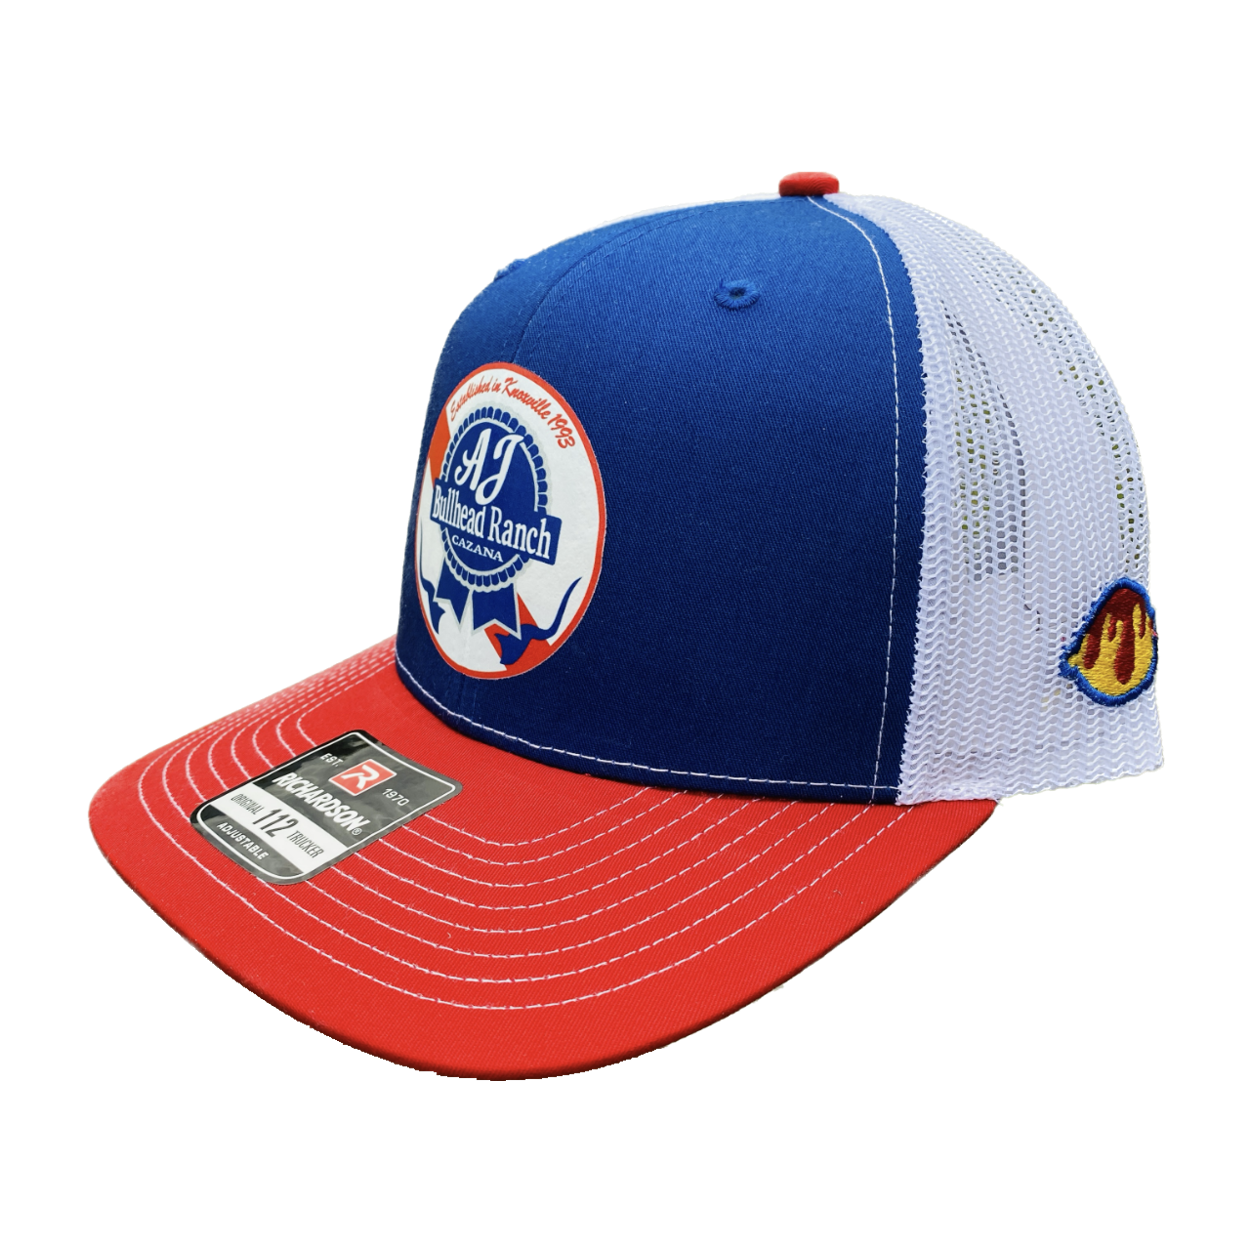 AJBR (Richardson Trucker Hat)